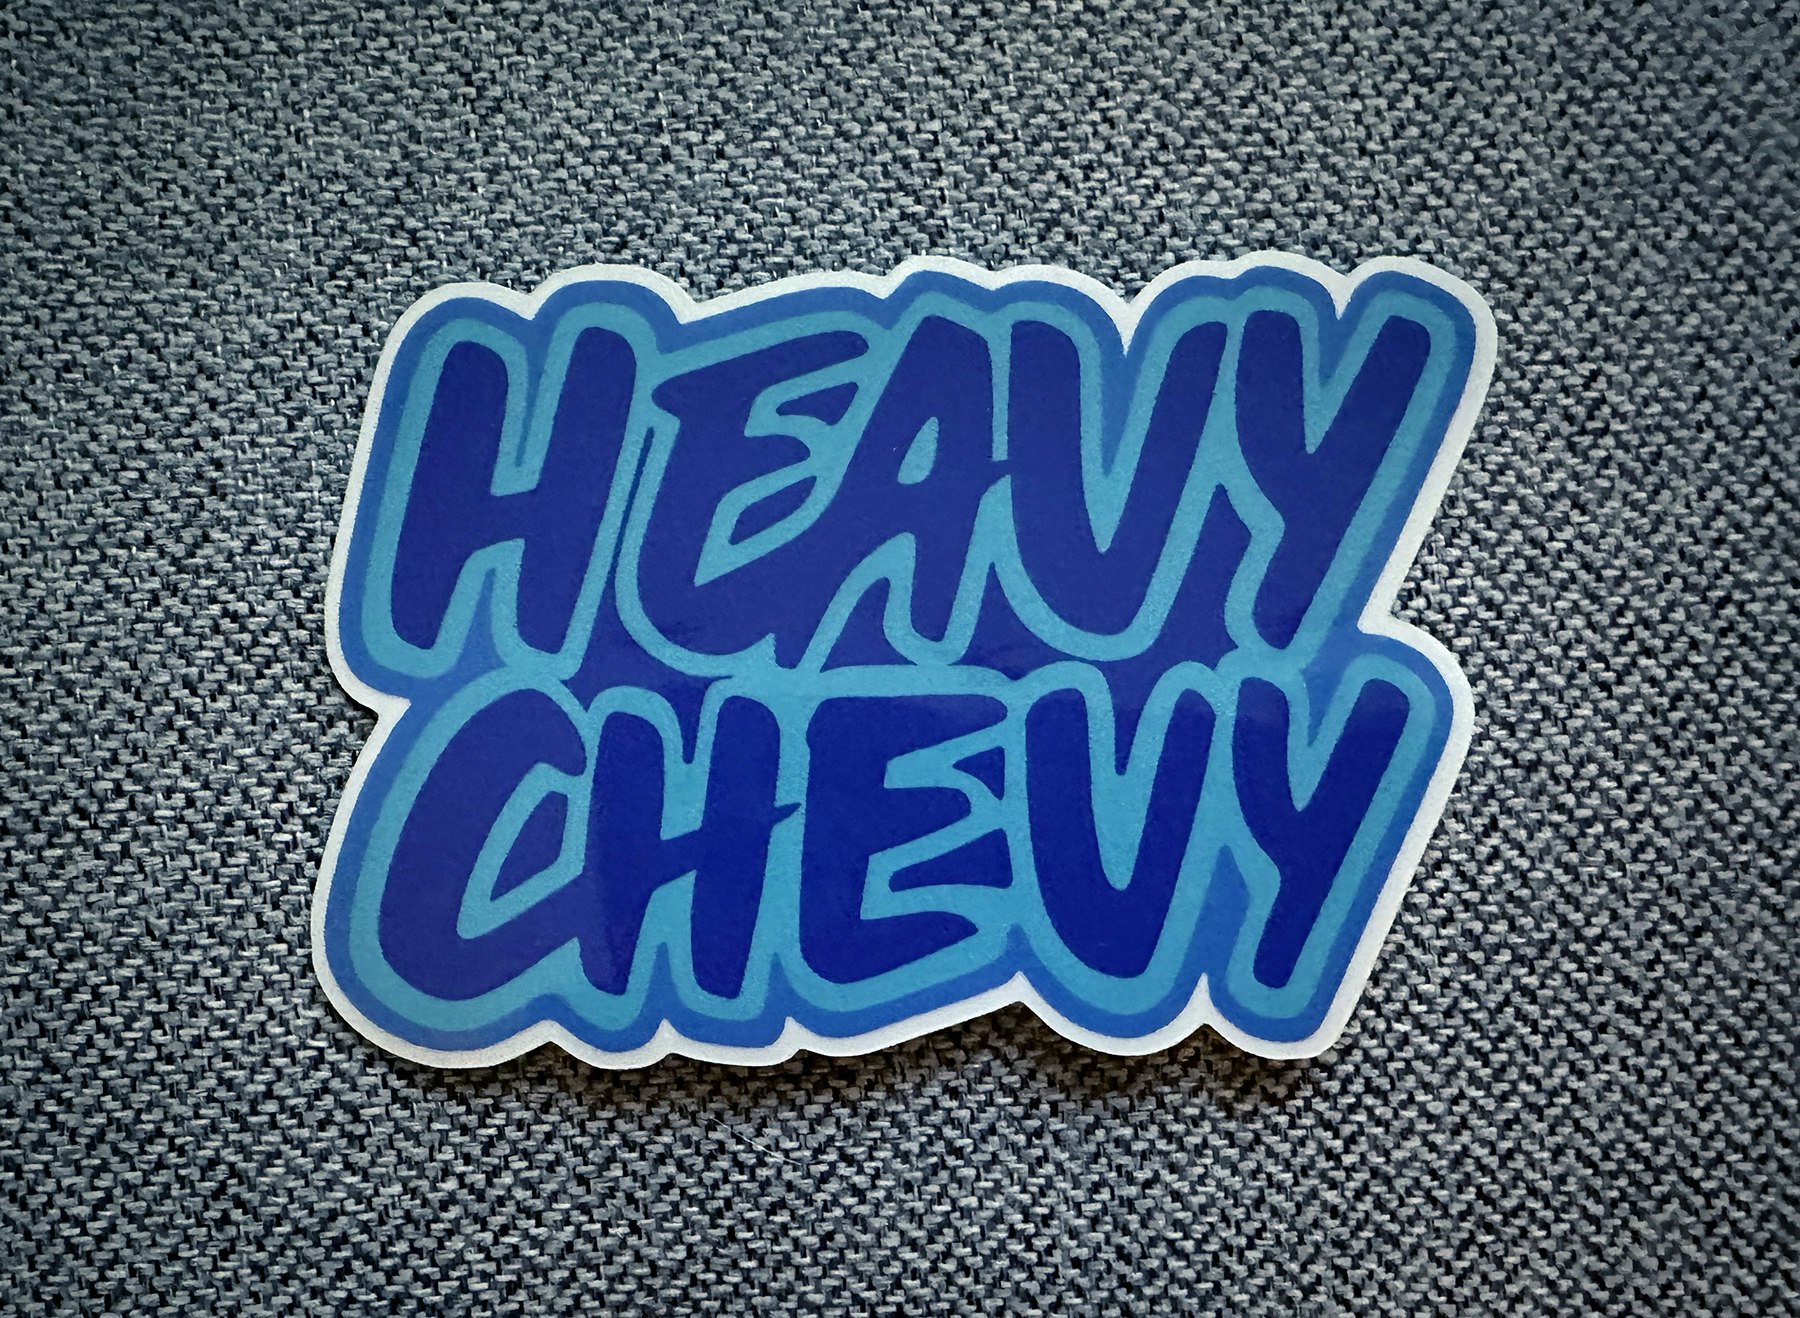 Heavy Chevy I